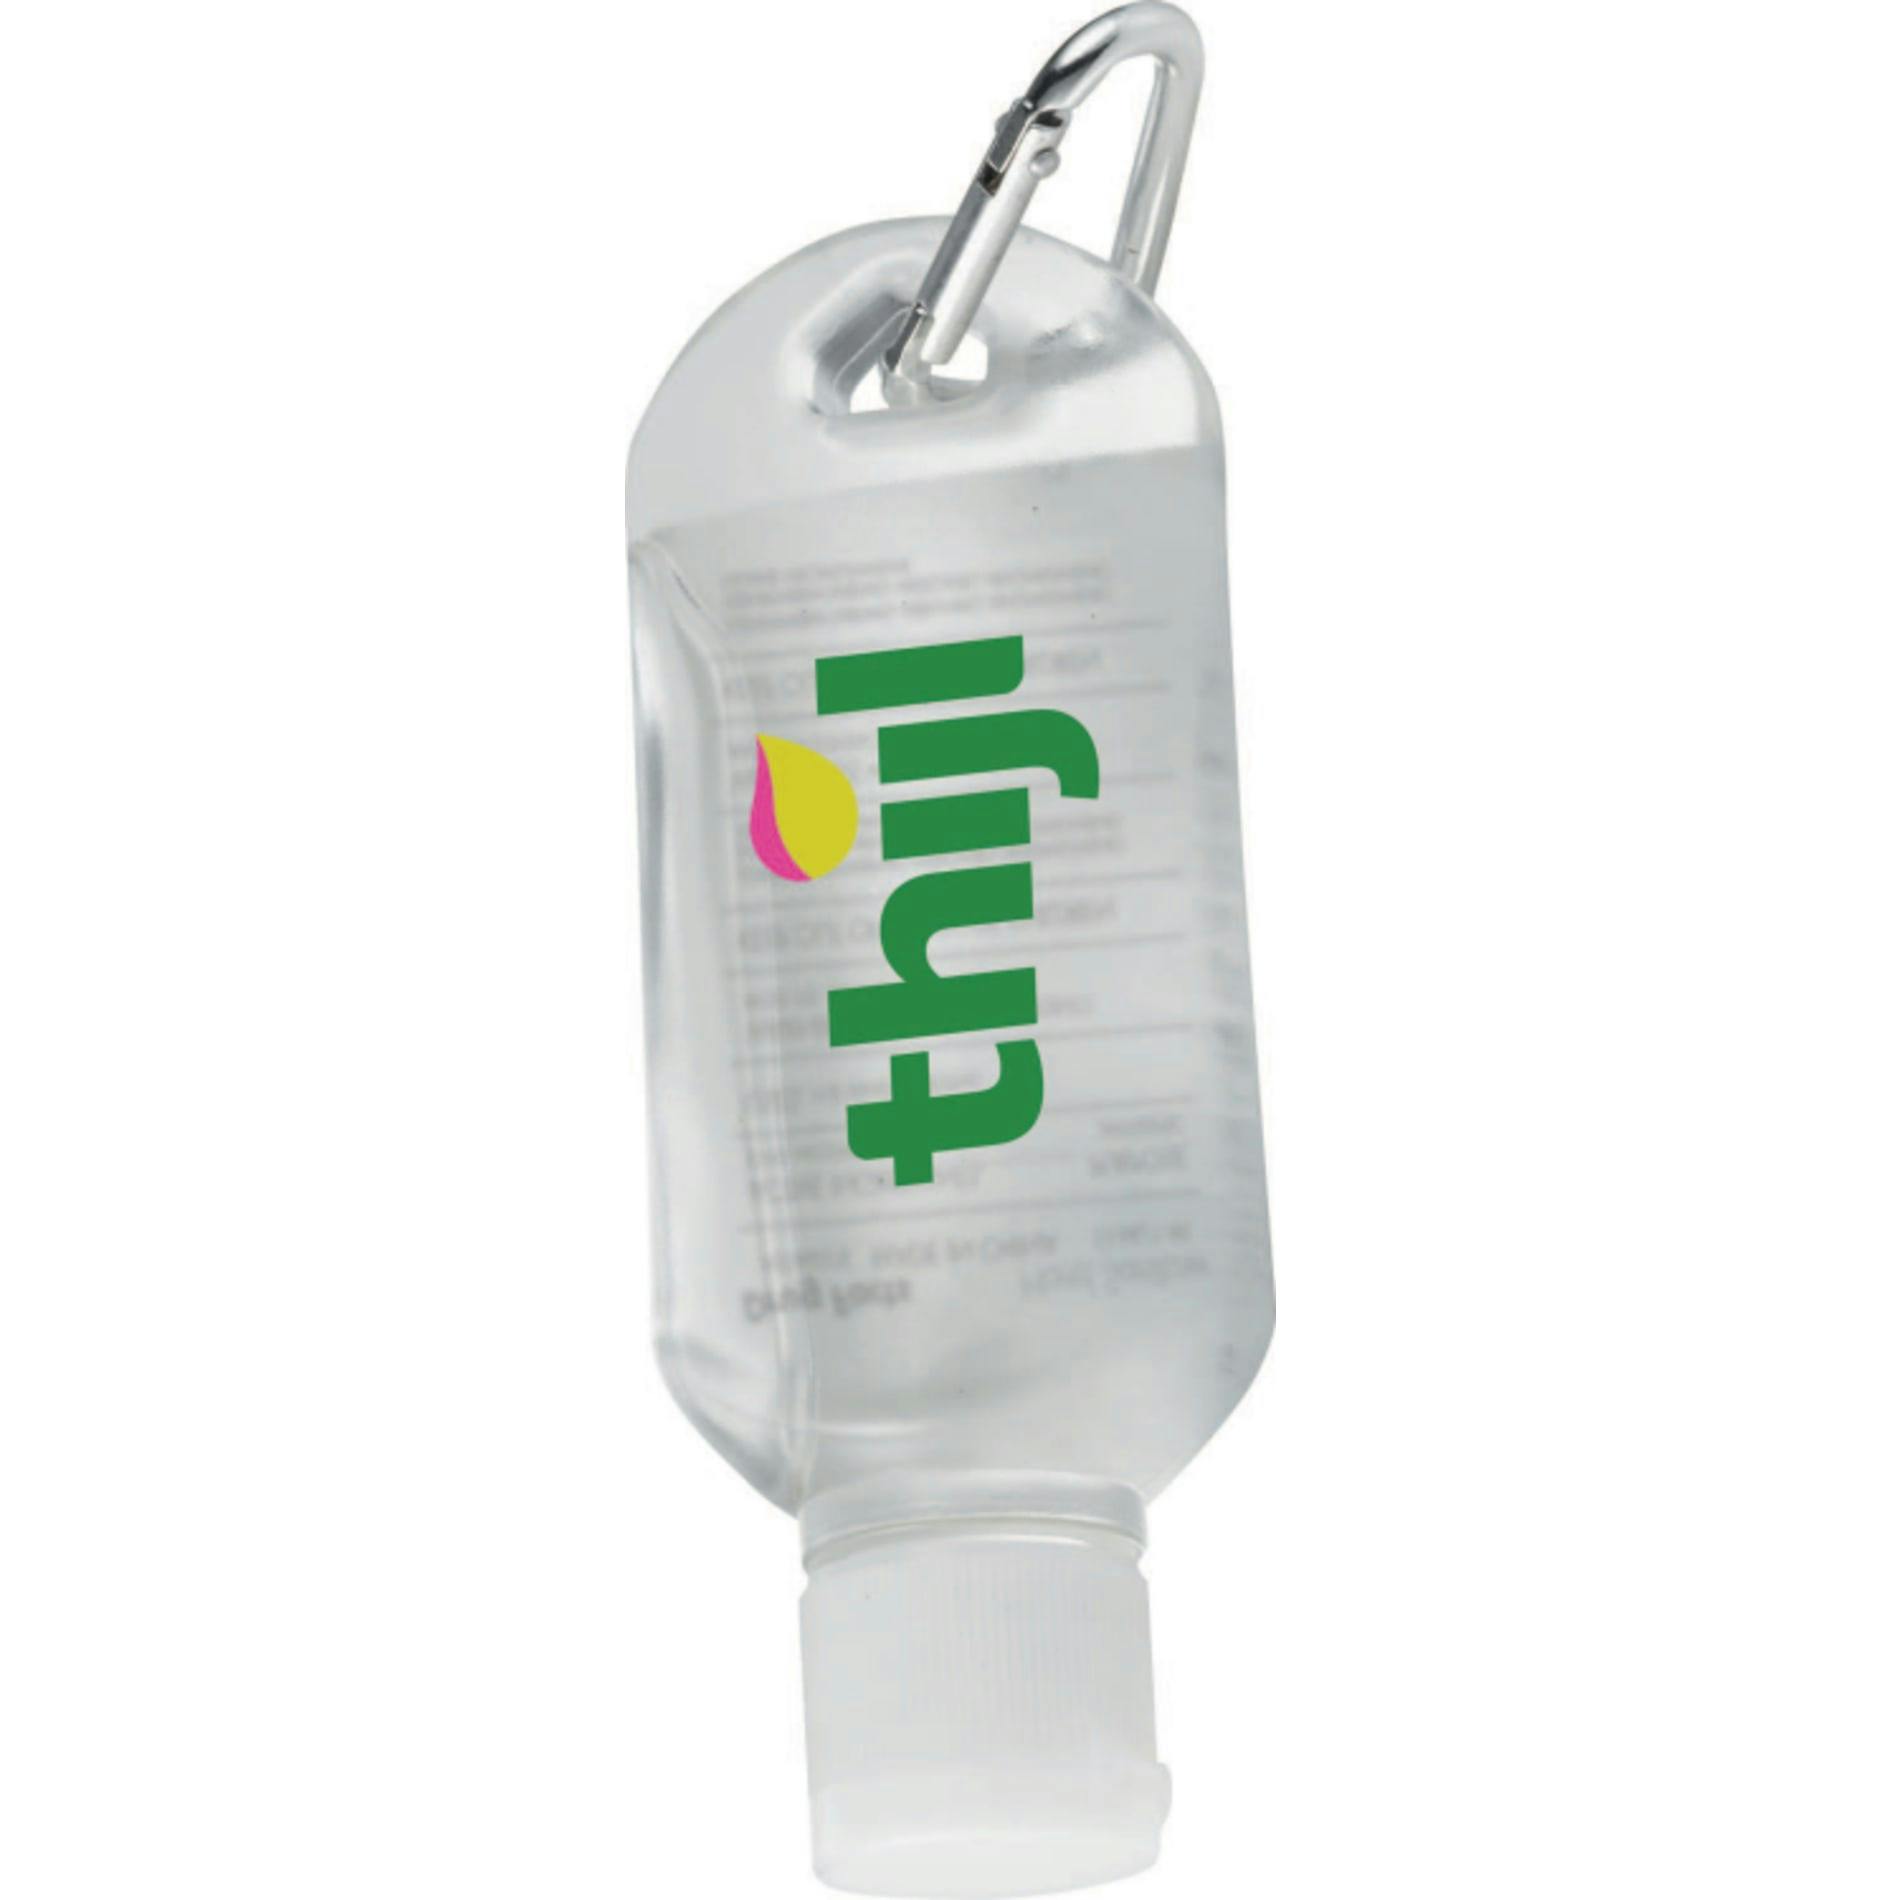 1.8oz Clip-N-Go Hand Sanitizer - additional Image 1